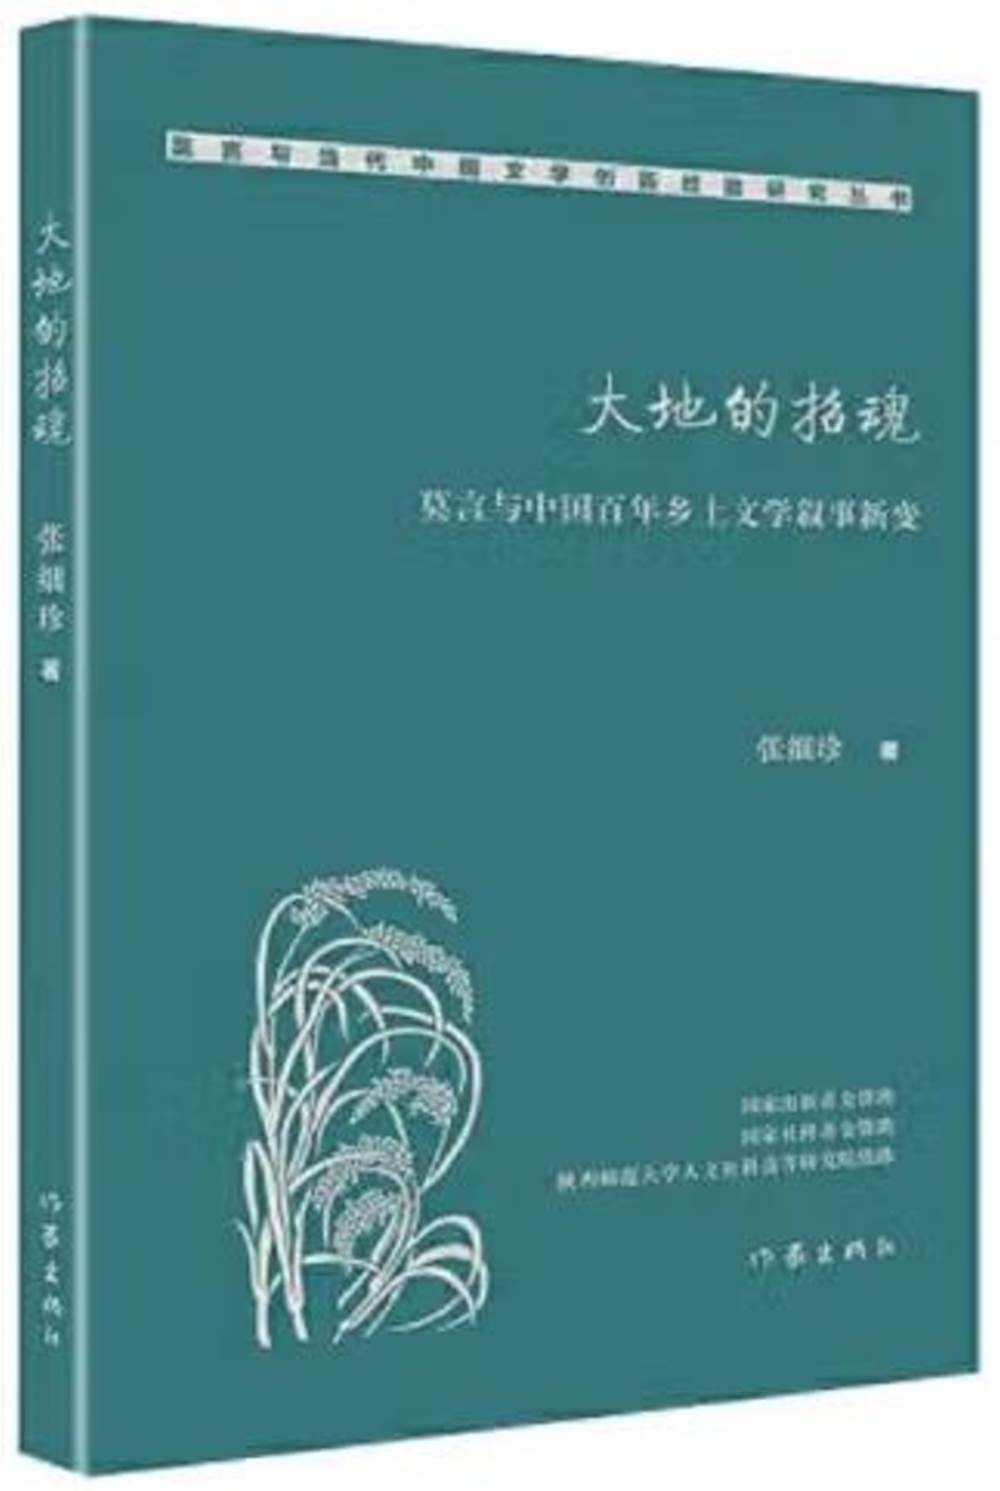 大地的招魂：莫言與中國百年鄉土文學敘事新變